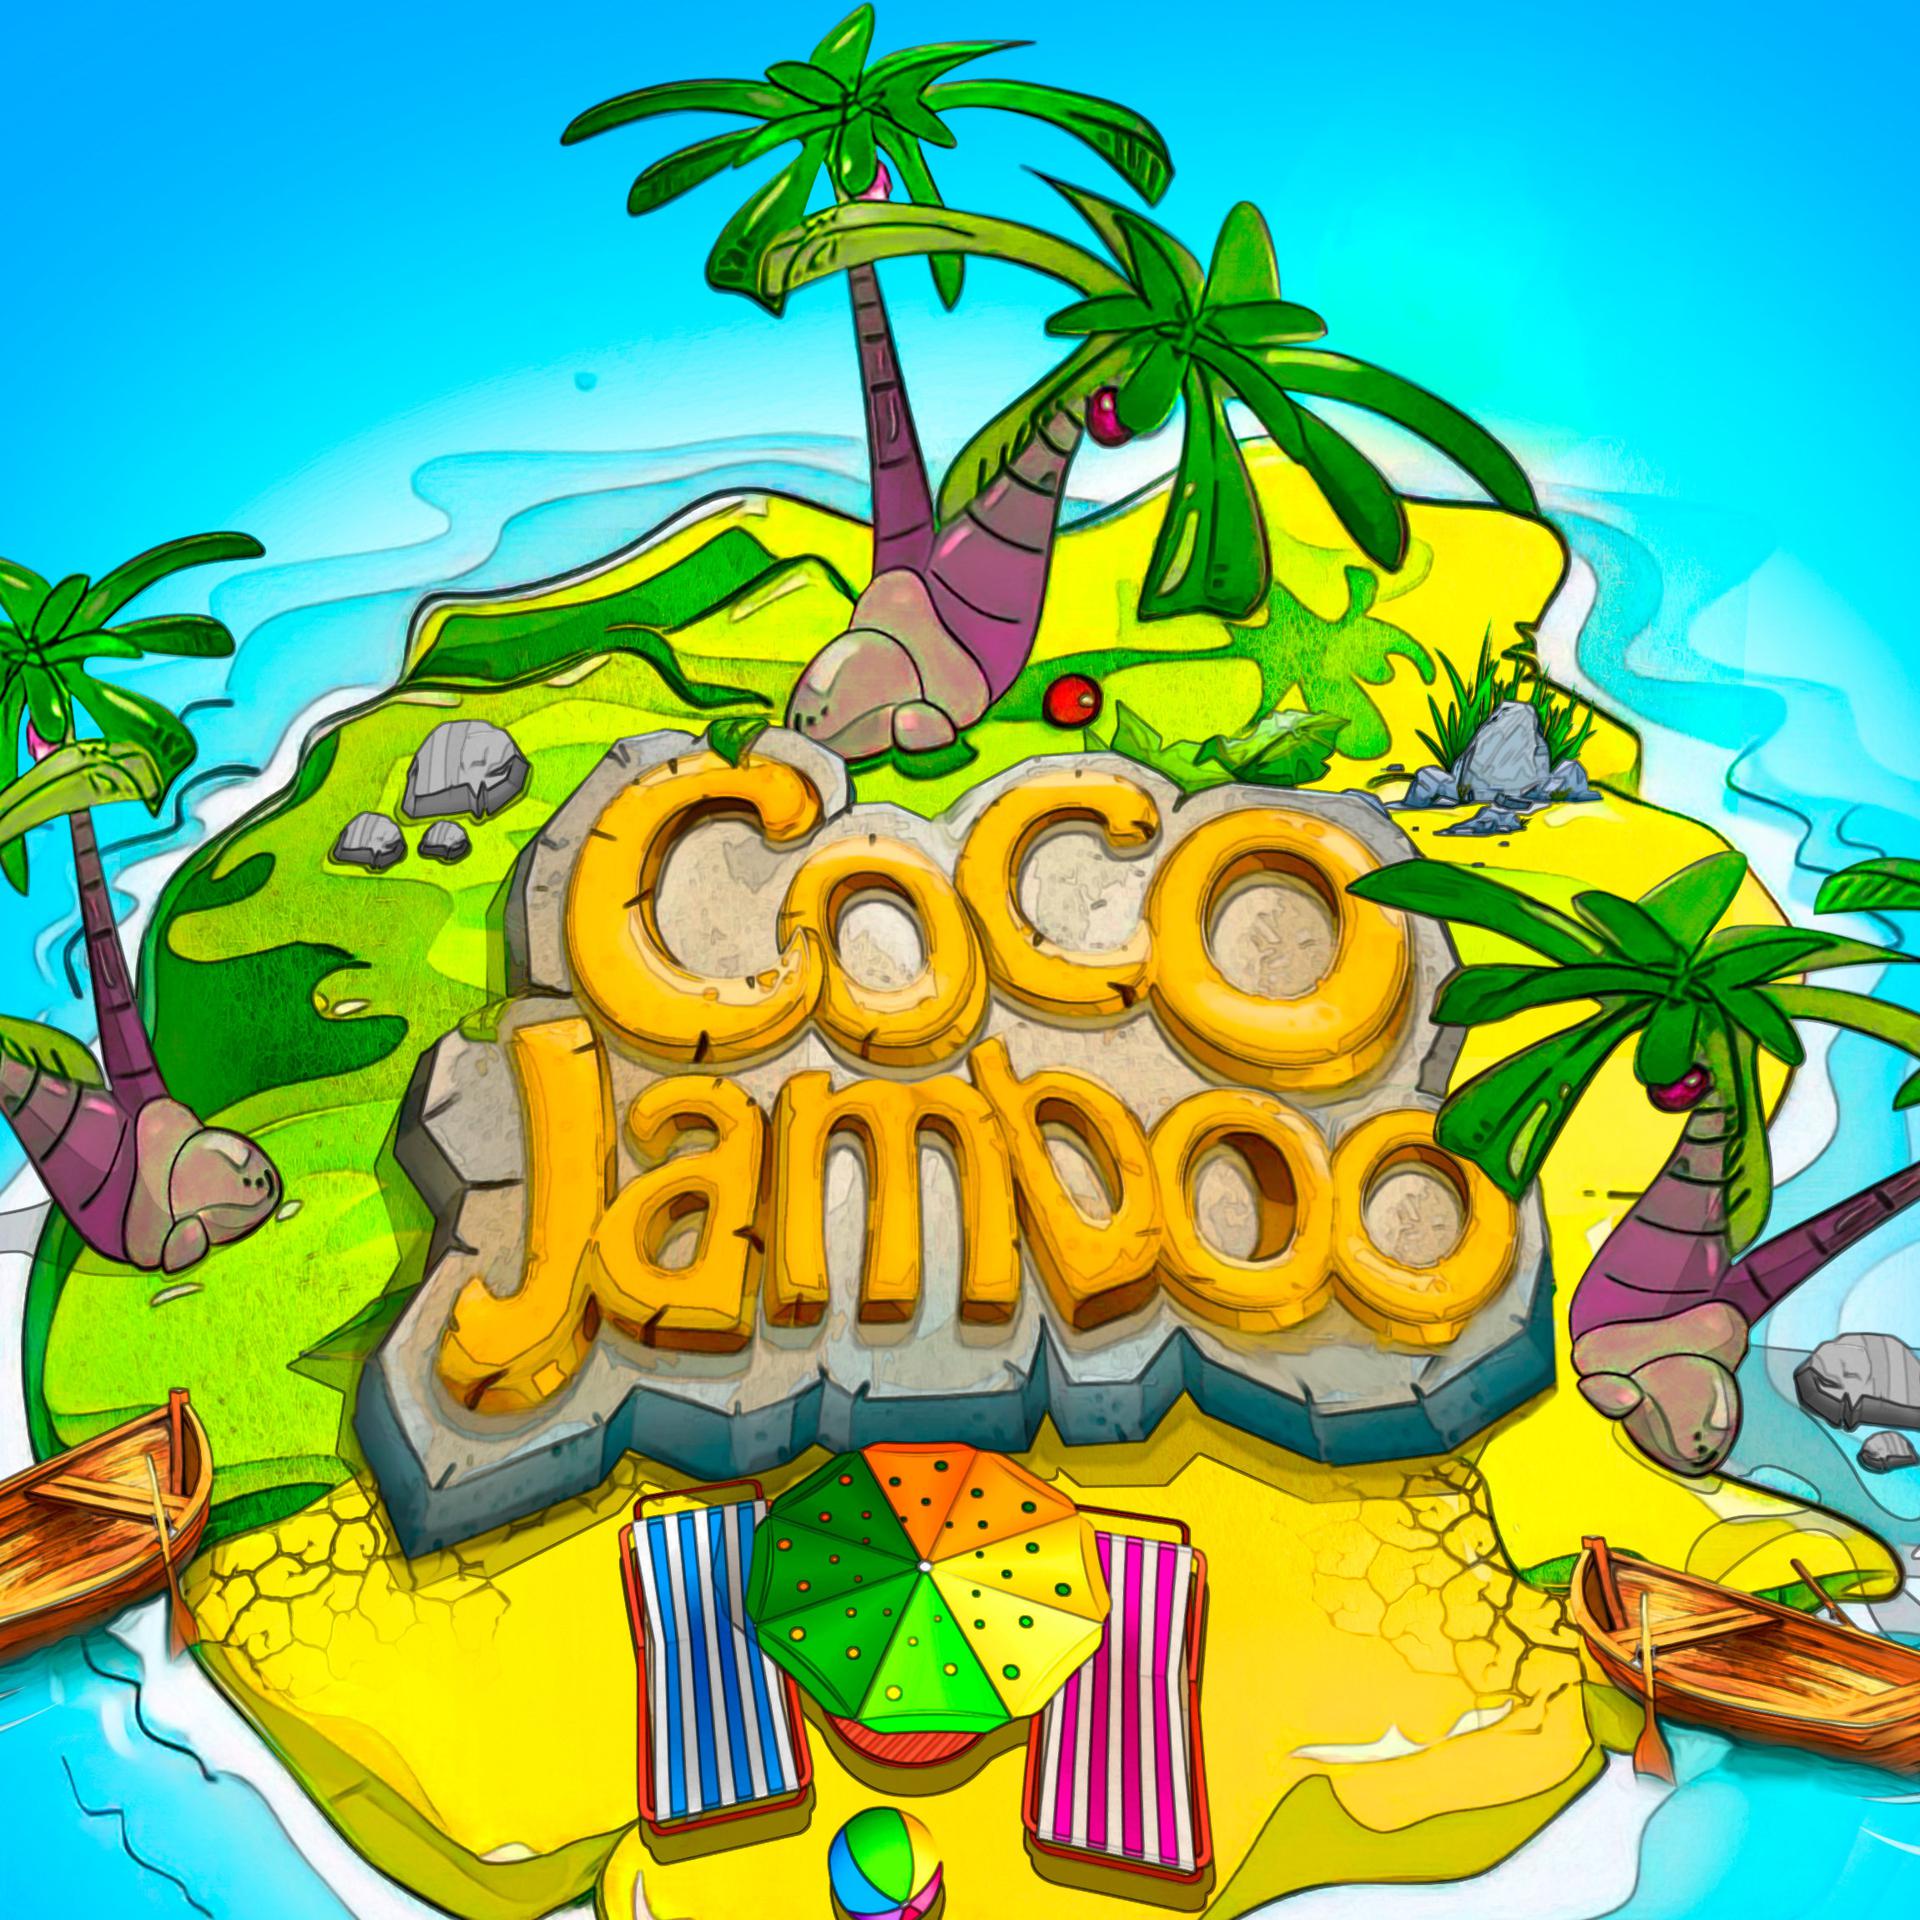 Постер альбома Coco Jamboo